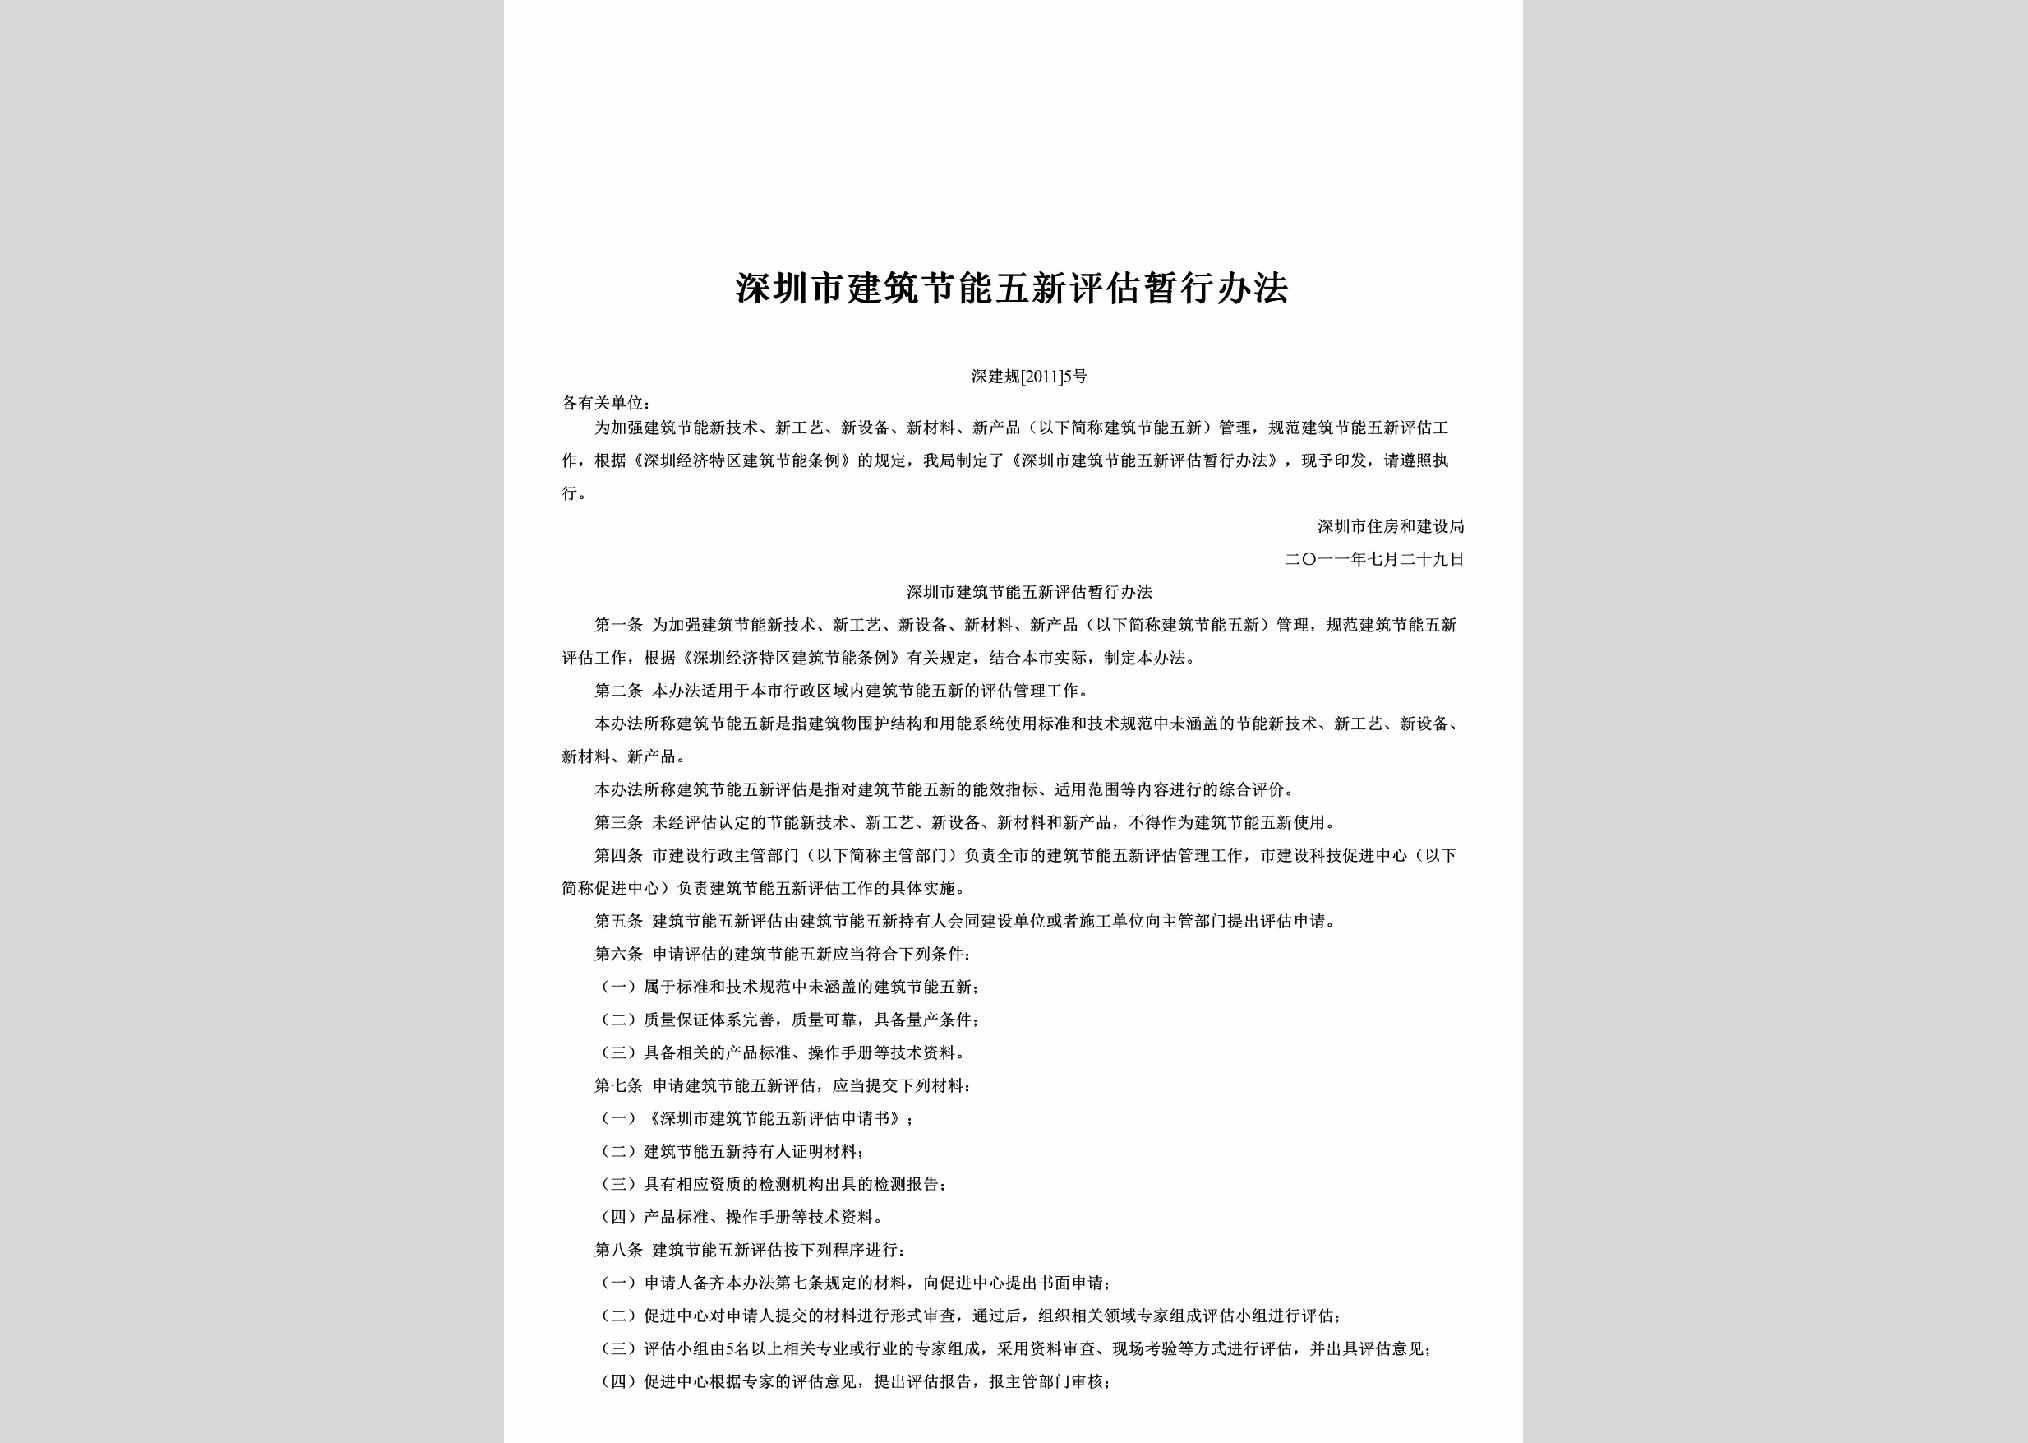 深建规[2011]5号：深圳市建筑节能五新评估暂行办法